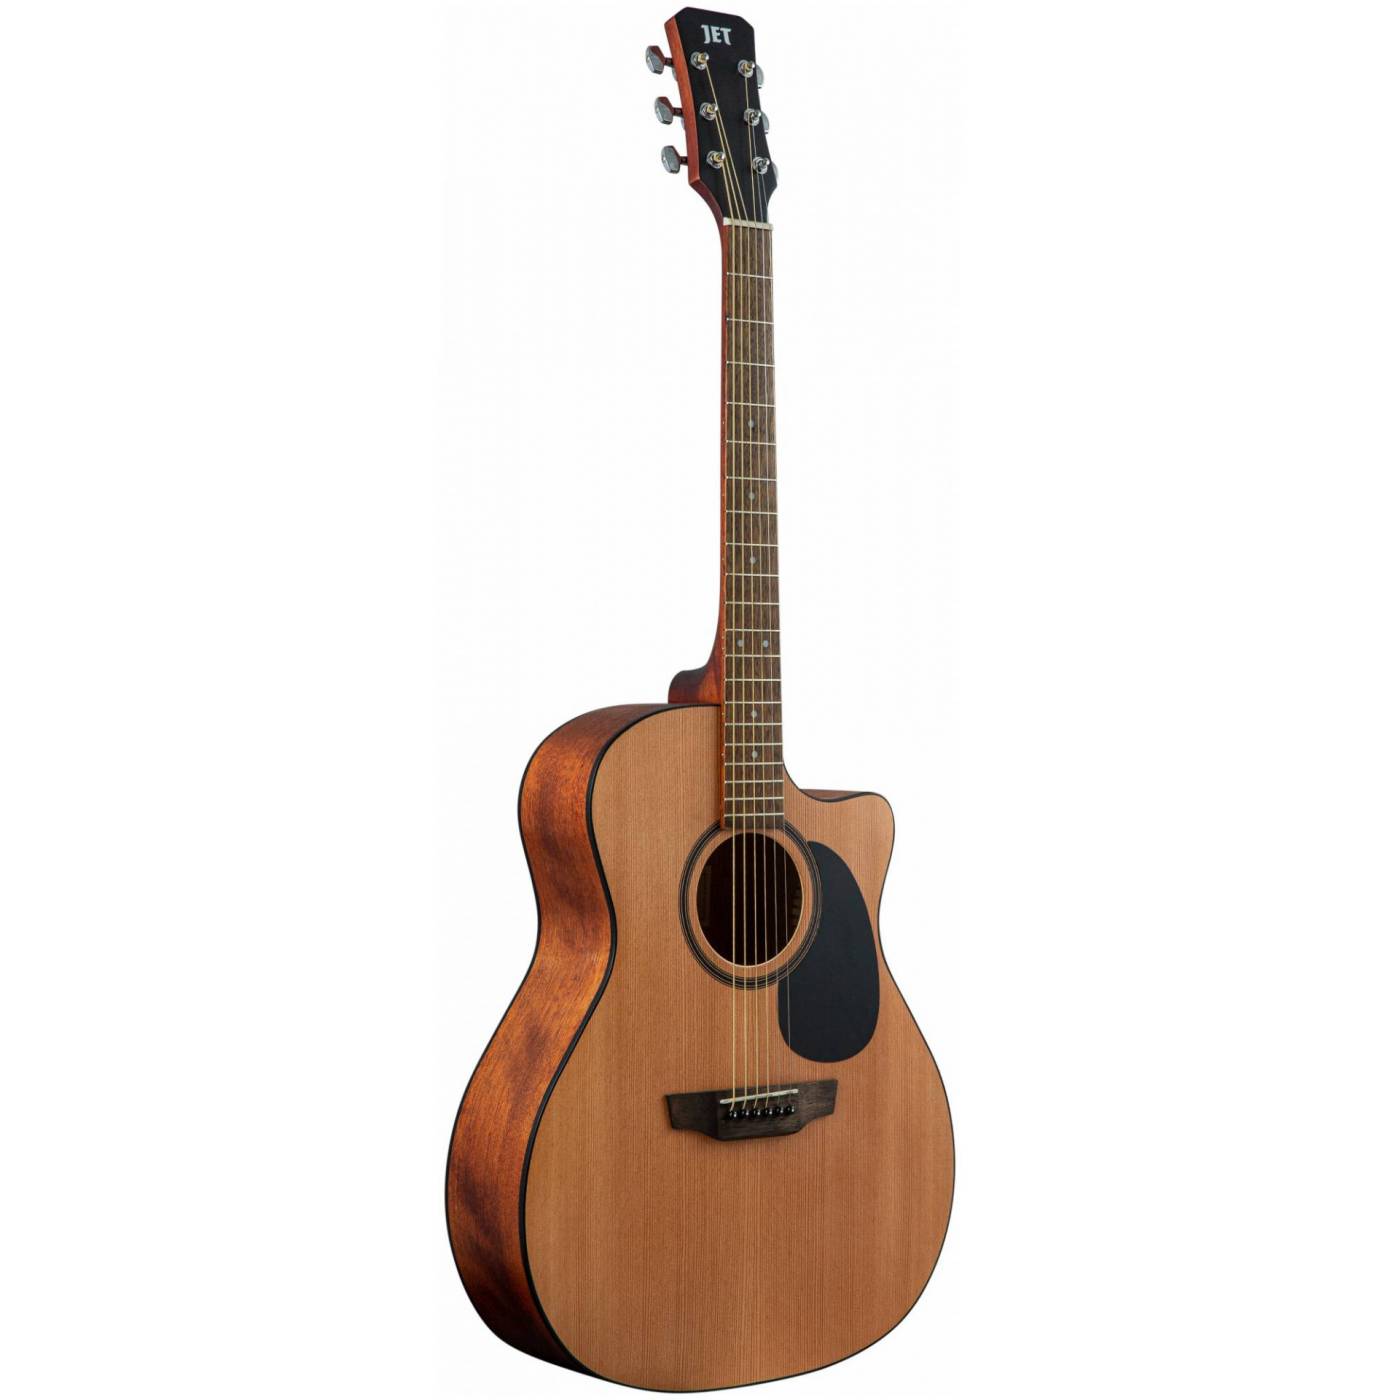 JET JGA-255 OP - акустическая гитара, гранд аудиториум, верхняя дека - кедр, корпус - красное дерево